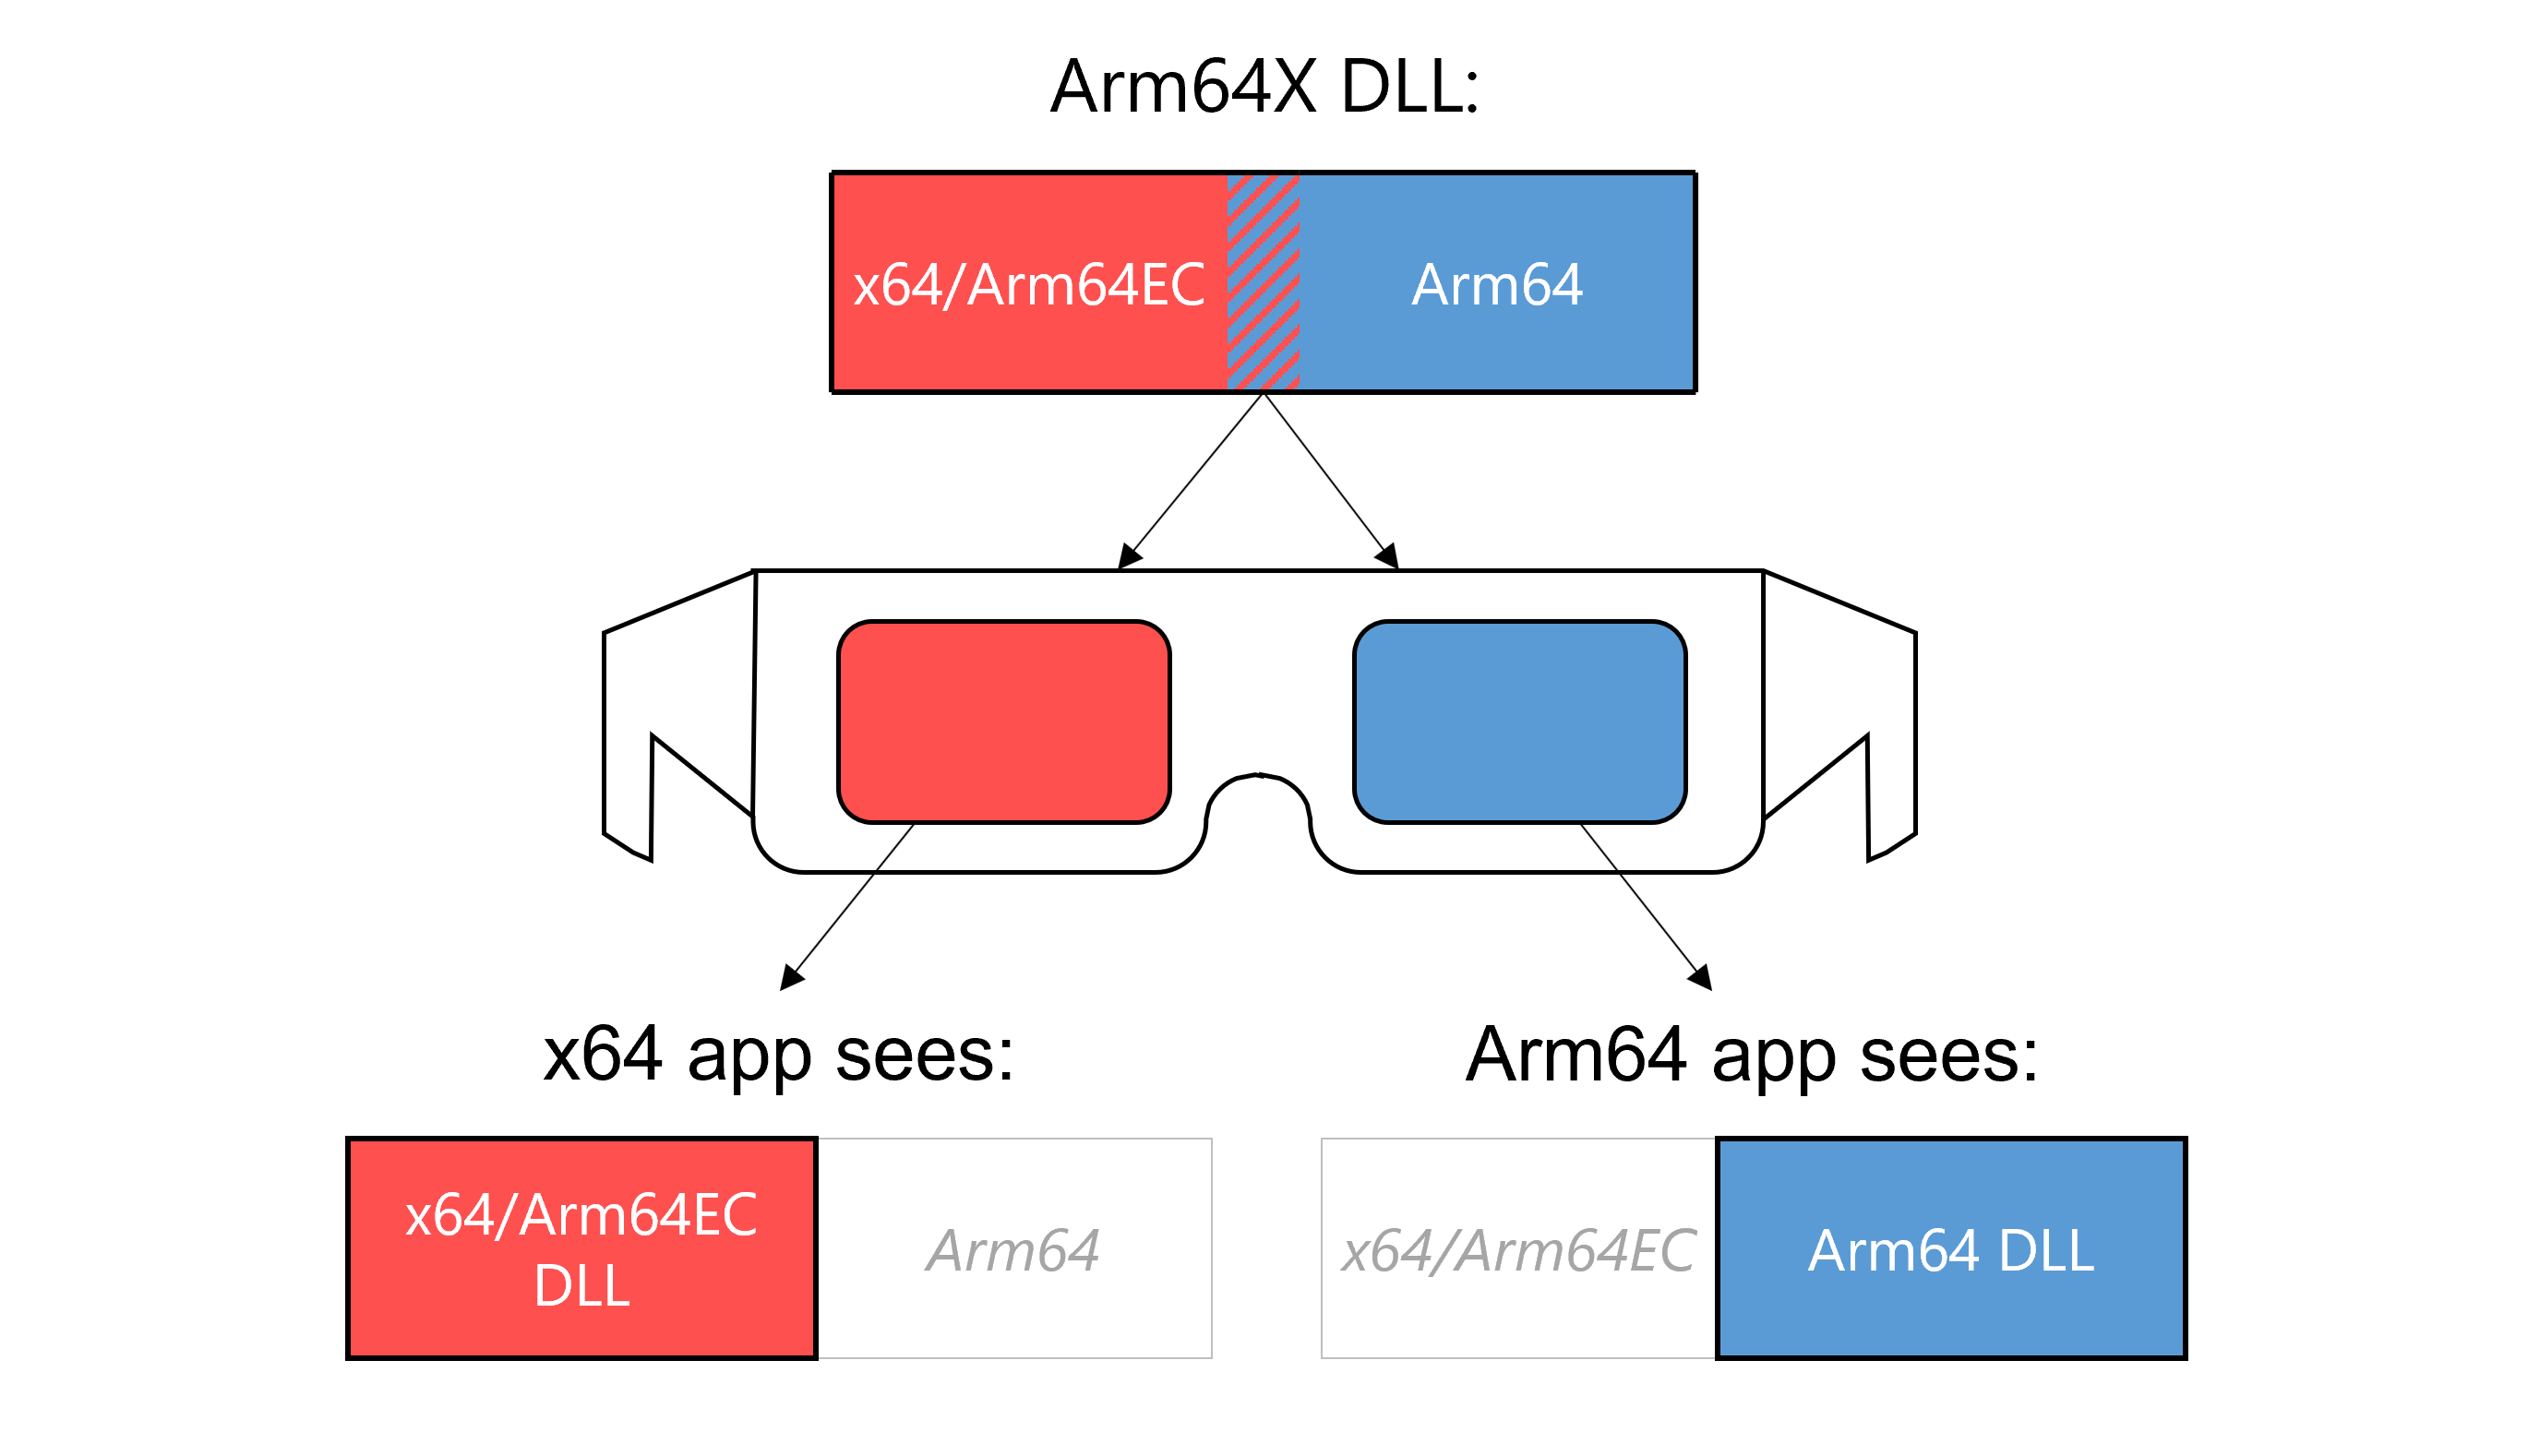 显示带有红色和蓝色镜头的 3D 眼镜的 Arm64X 转换图形